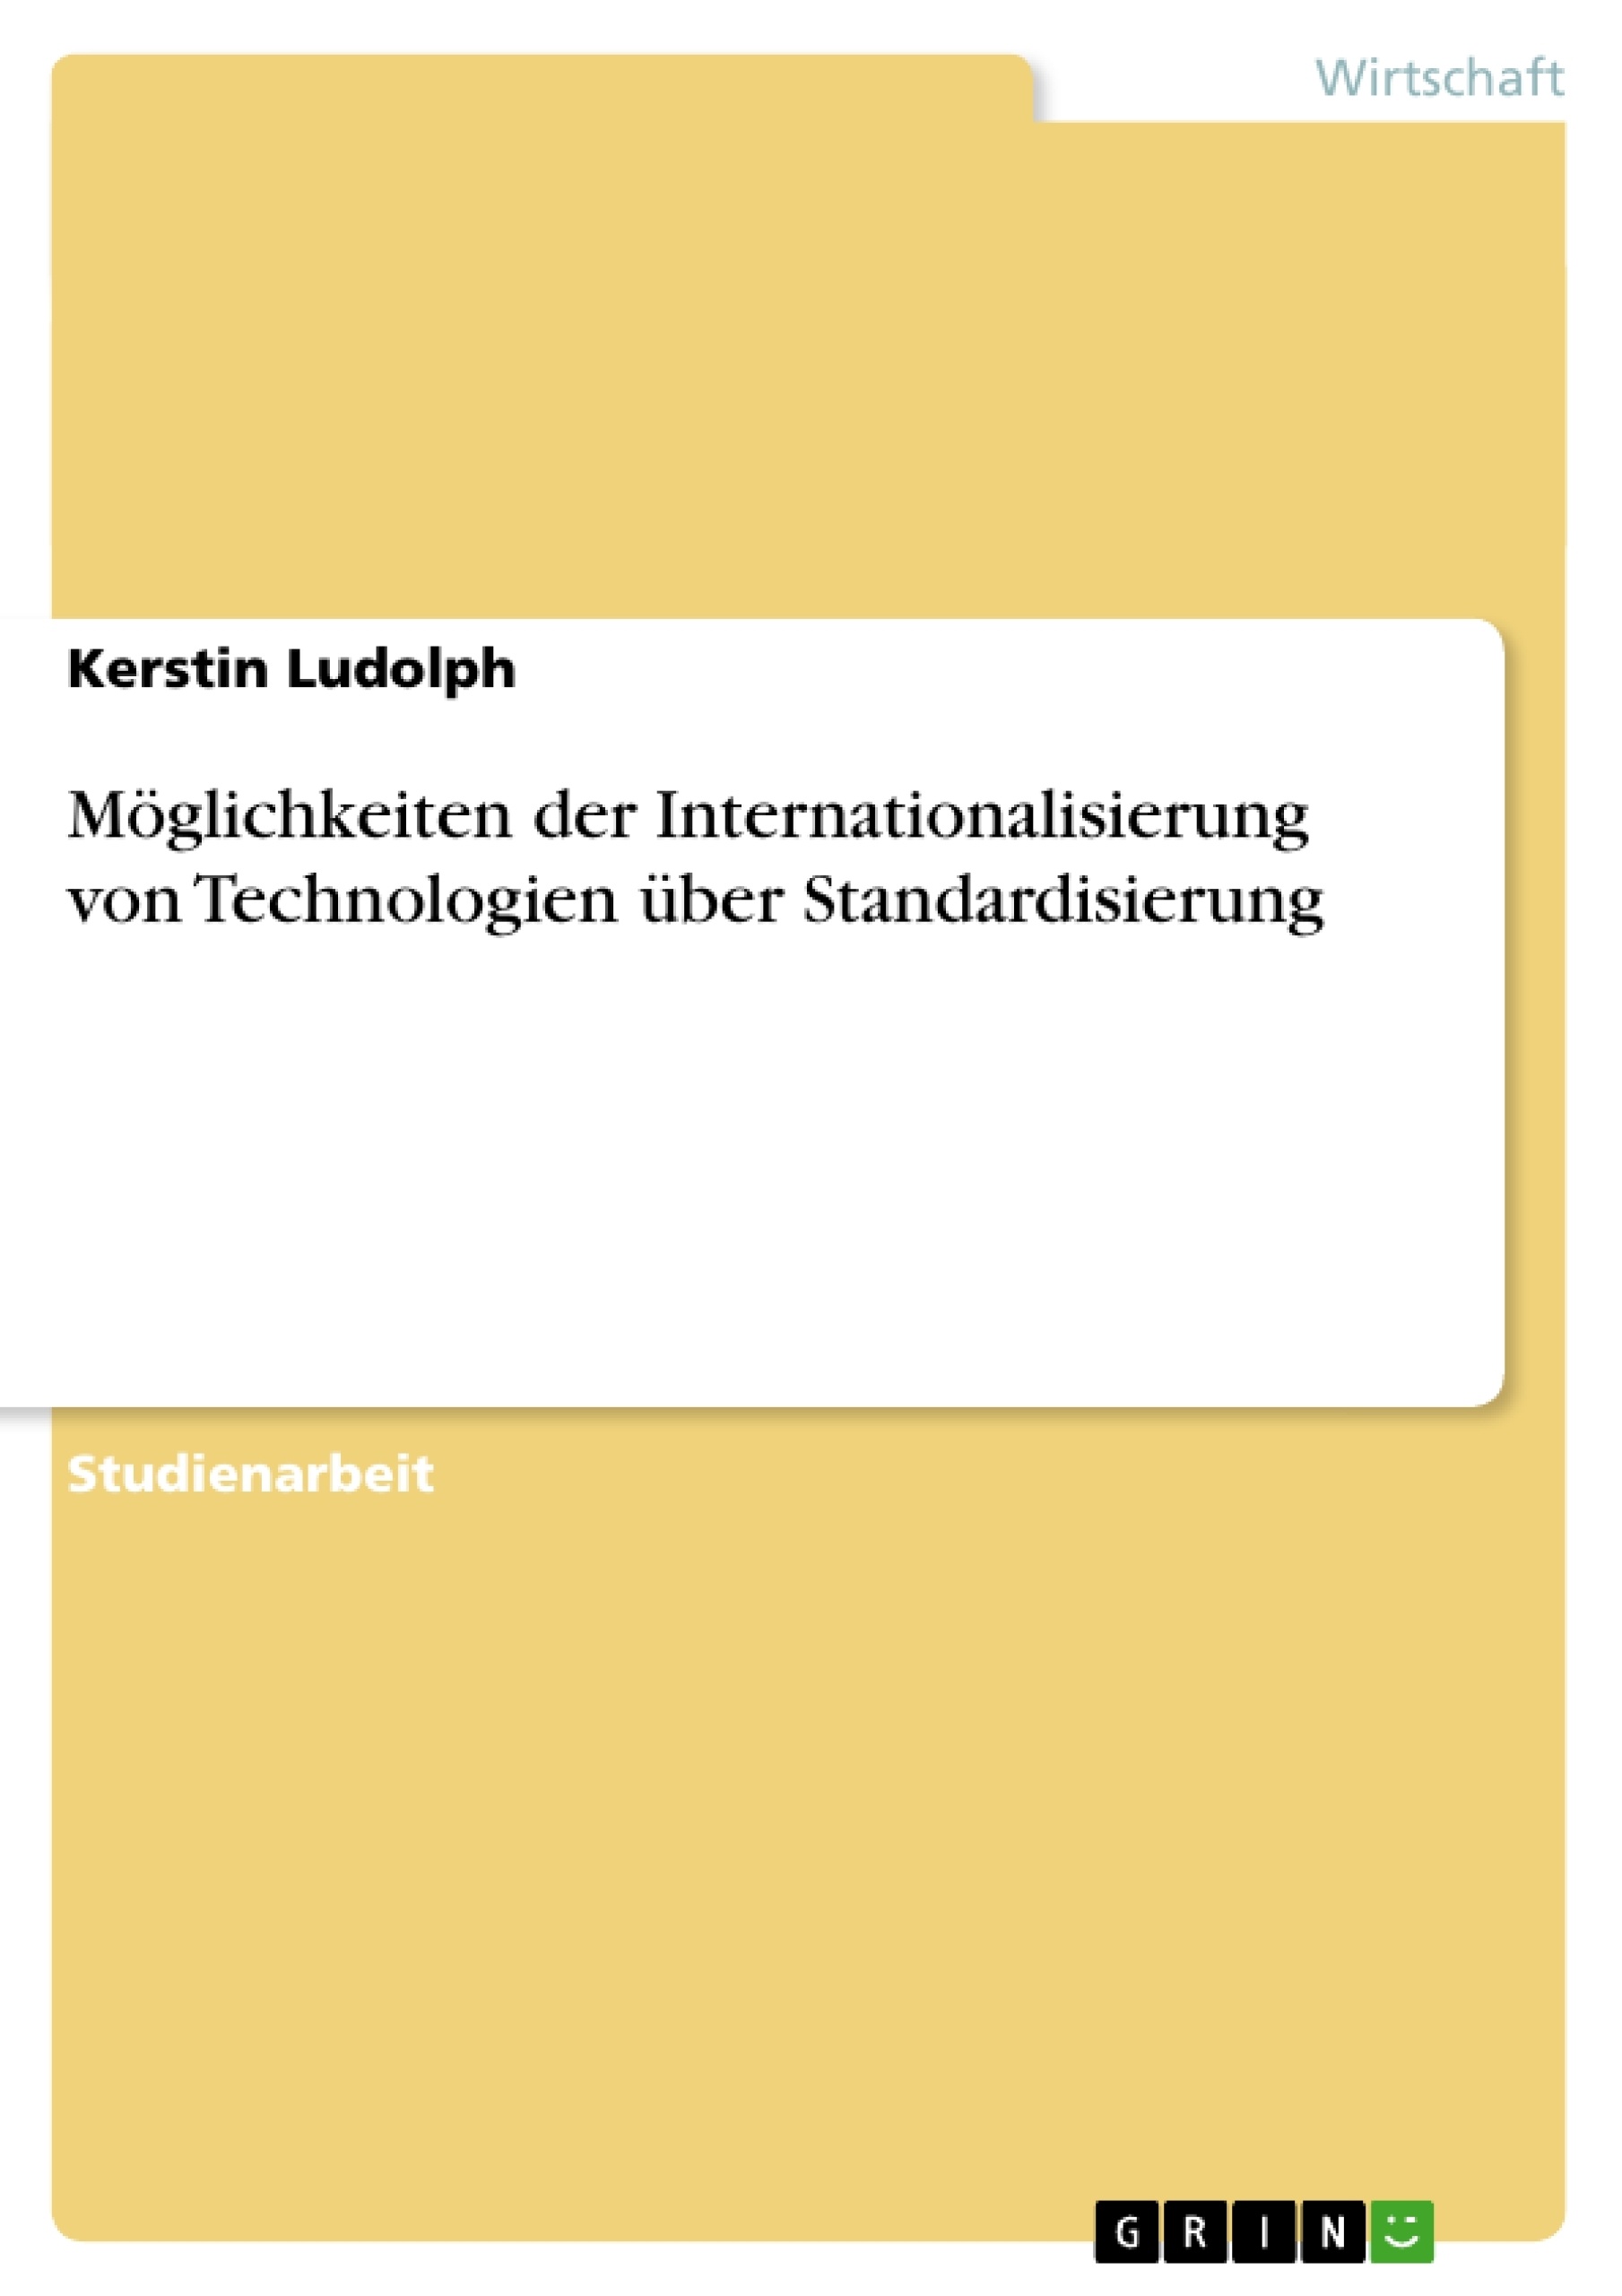 Title: Möglichkeiten der Internationalisierung von Technologien über Standardisierung